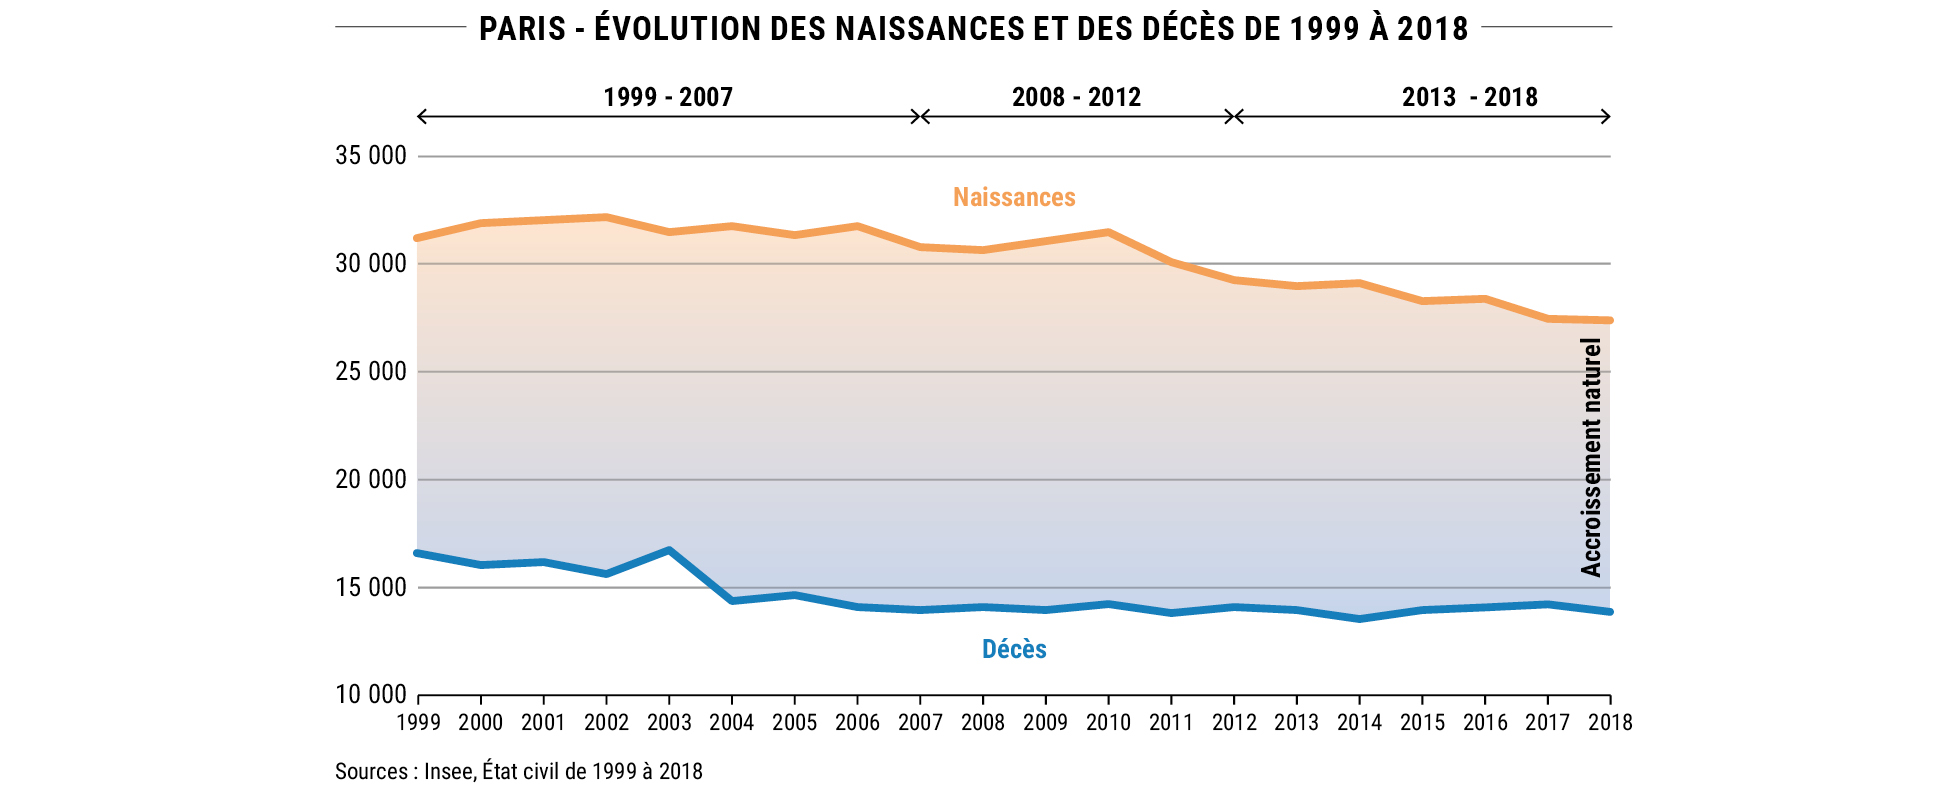 Paris - Évolution des naissances et des décès de 1999 à 2018 © Apur - Sources : Insee, État civil de 1999 à 2018